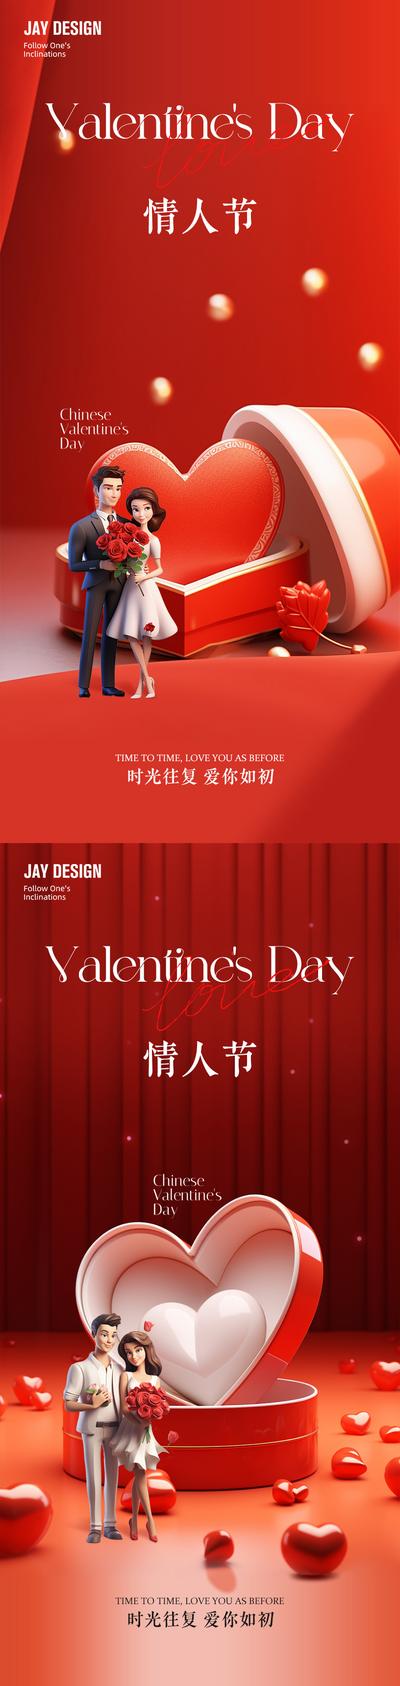 【南门网】广告 海报 房地产 情人节 公历节日 爱心 情侣 礼物 红色 520